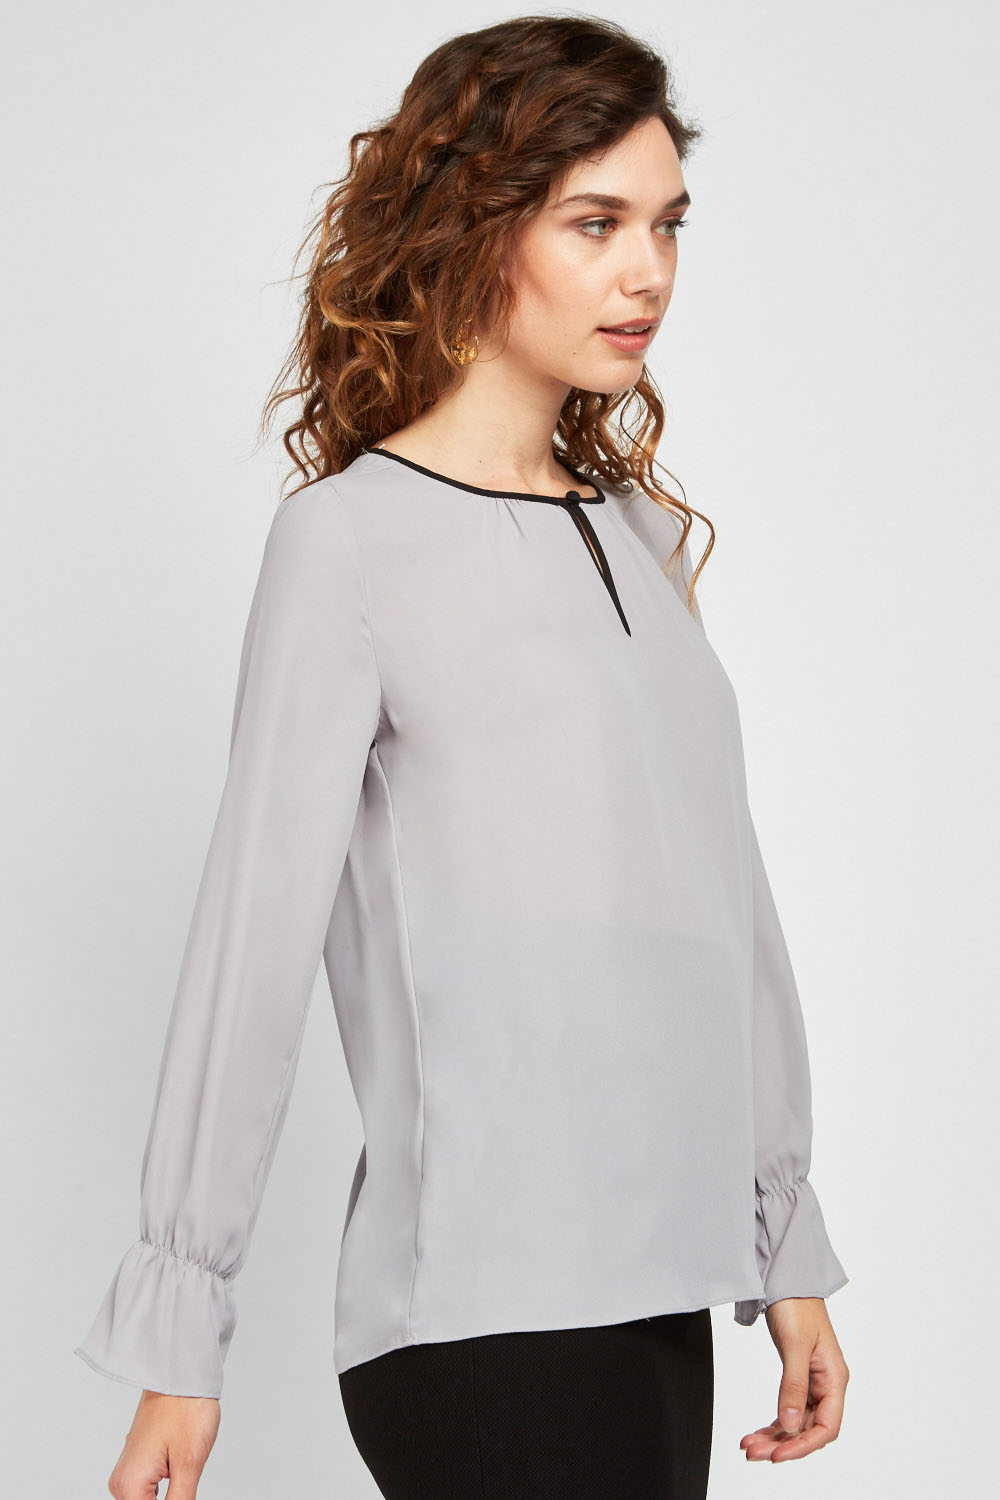 grey chiffon blouse